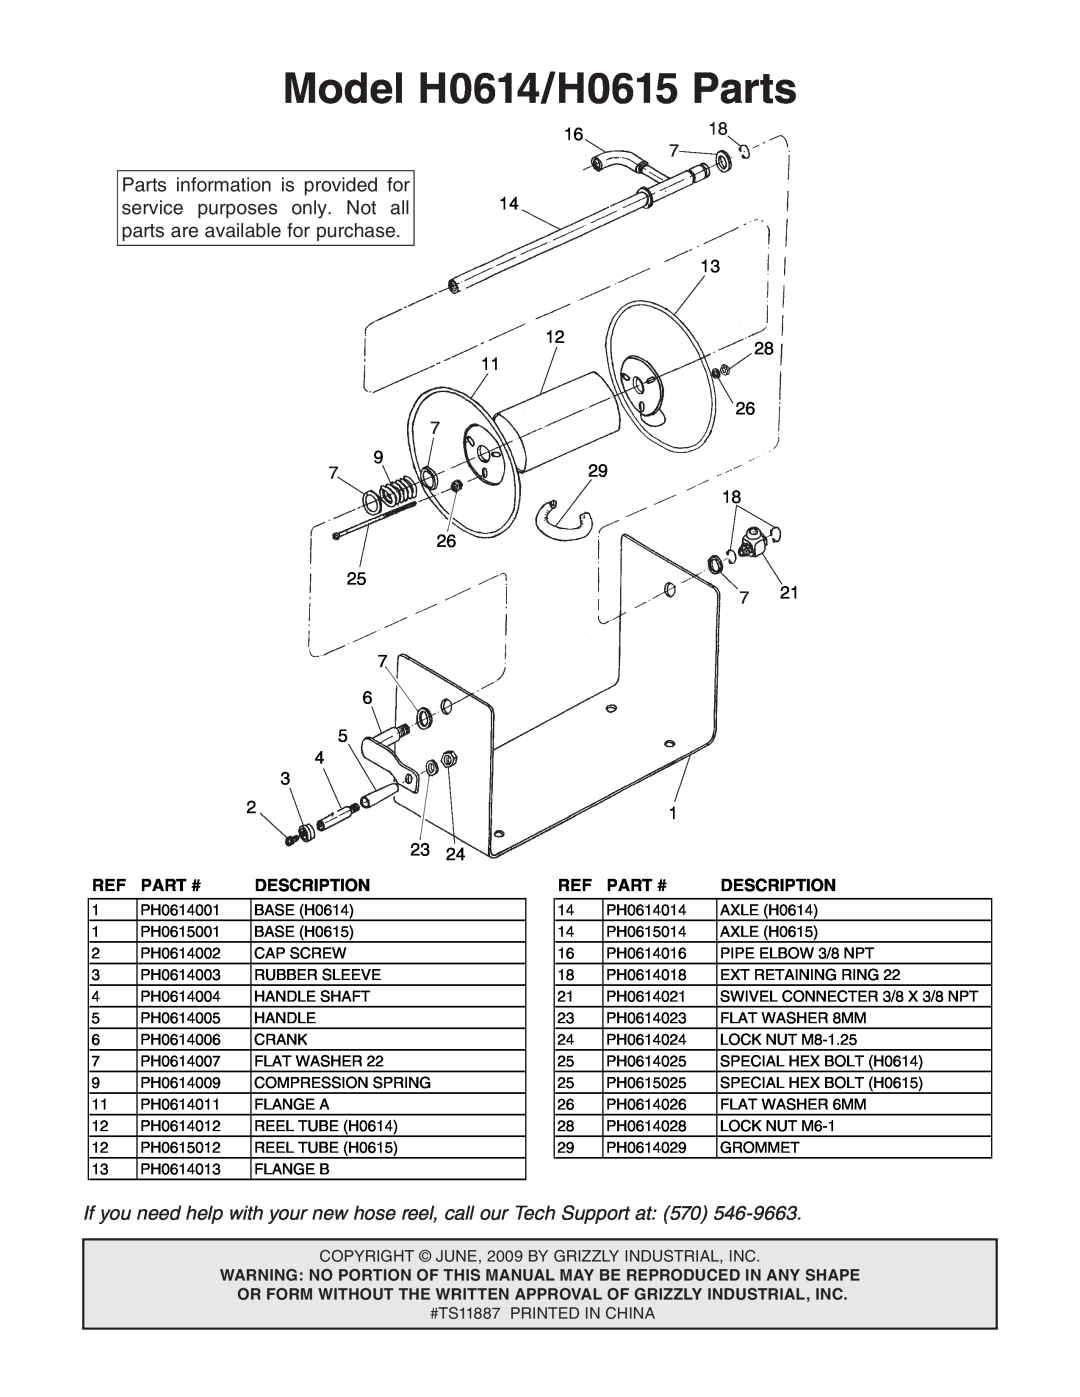 Grizzly specifications Model H0614/H0615 Parts, 1618, 1228, Part #, Description 